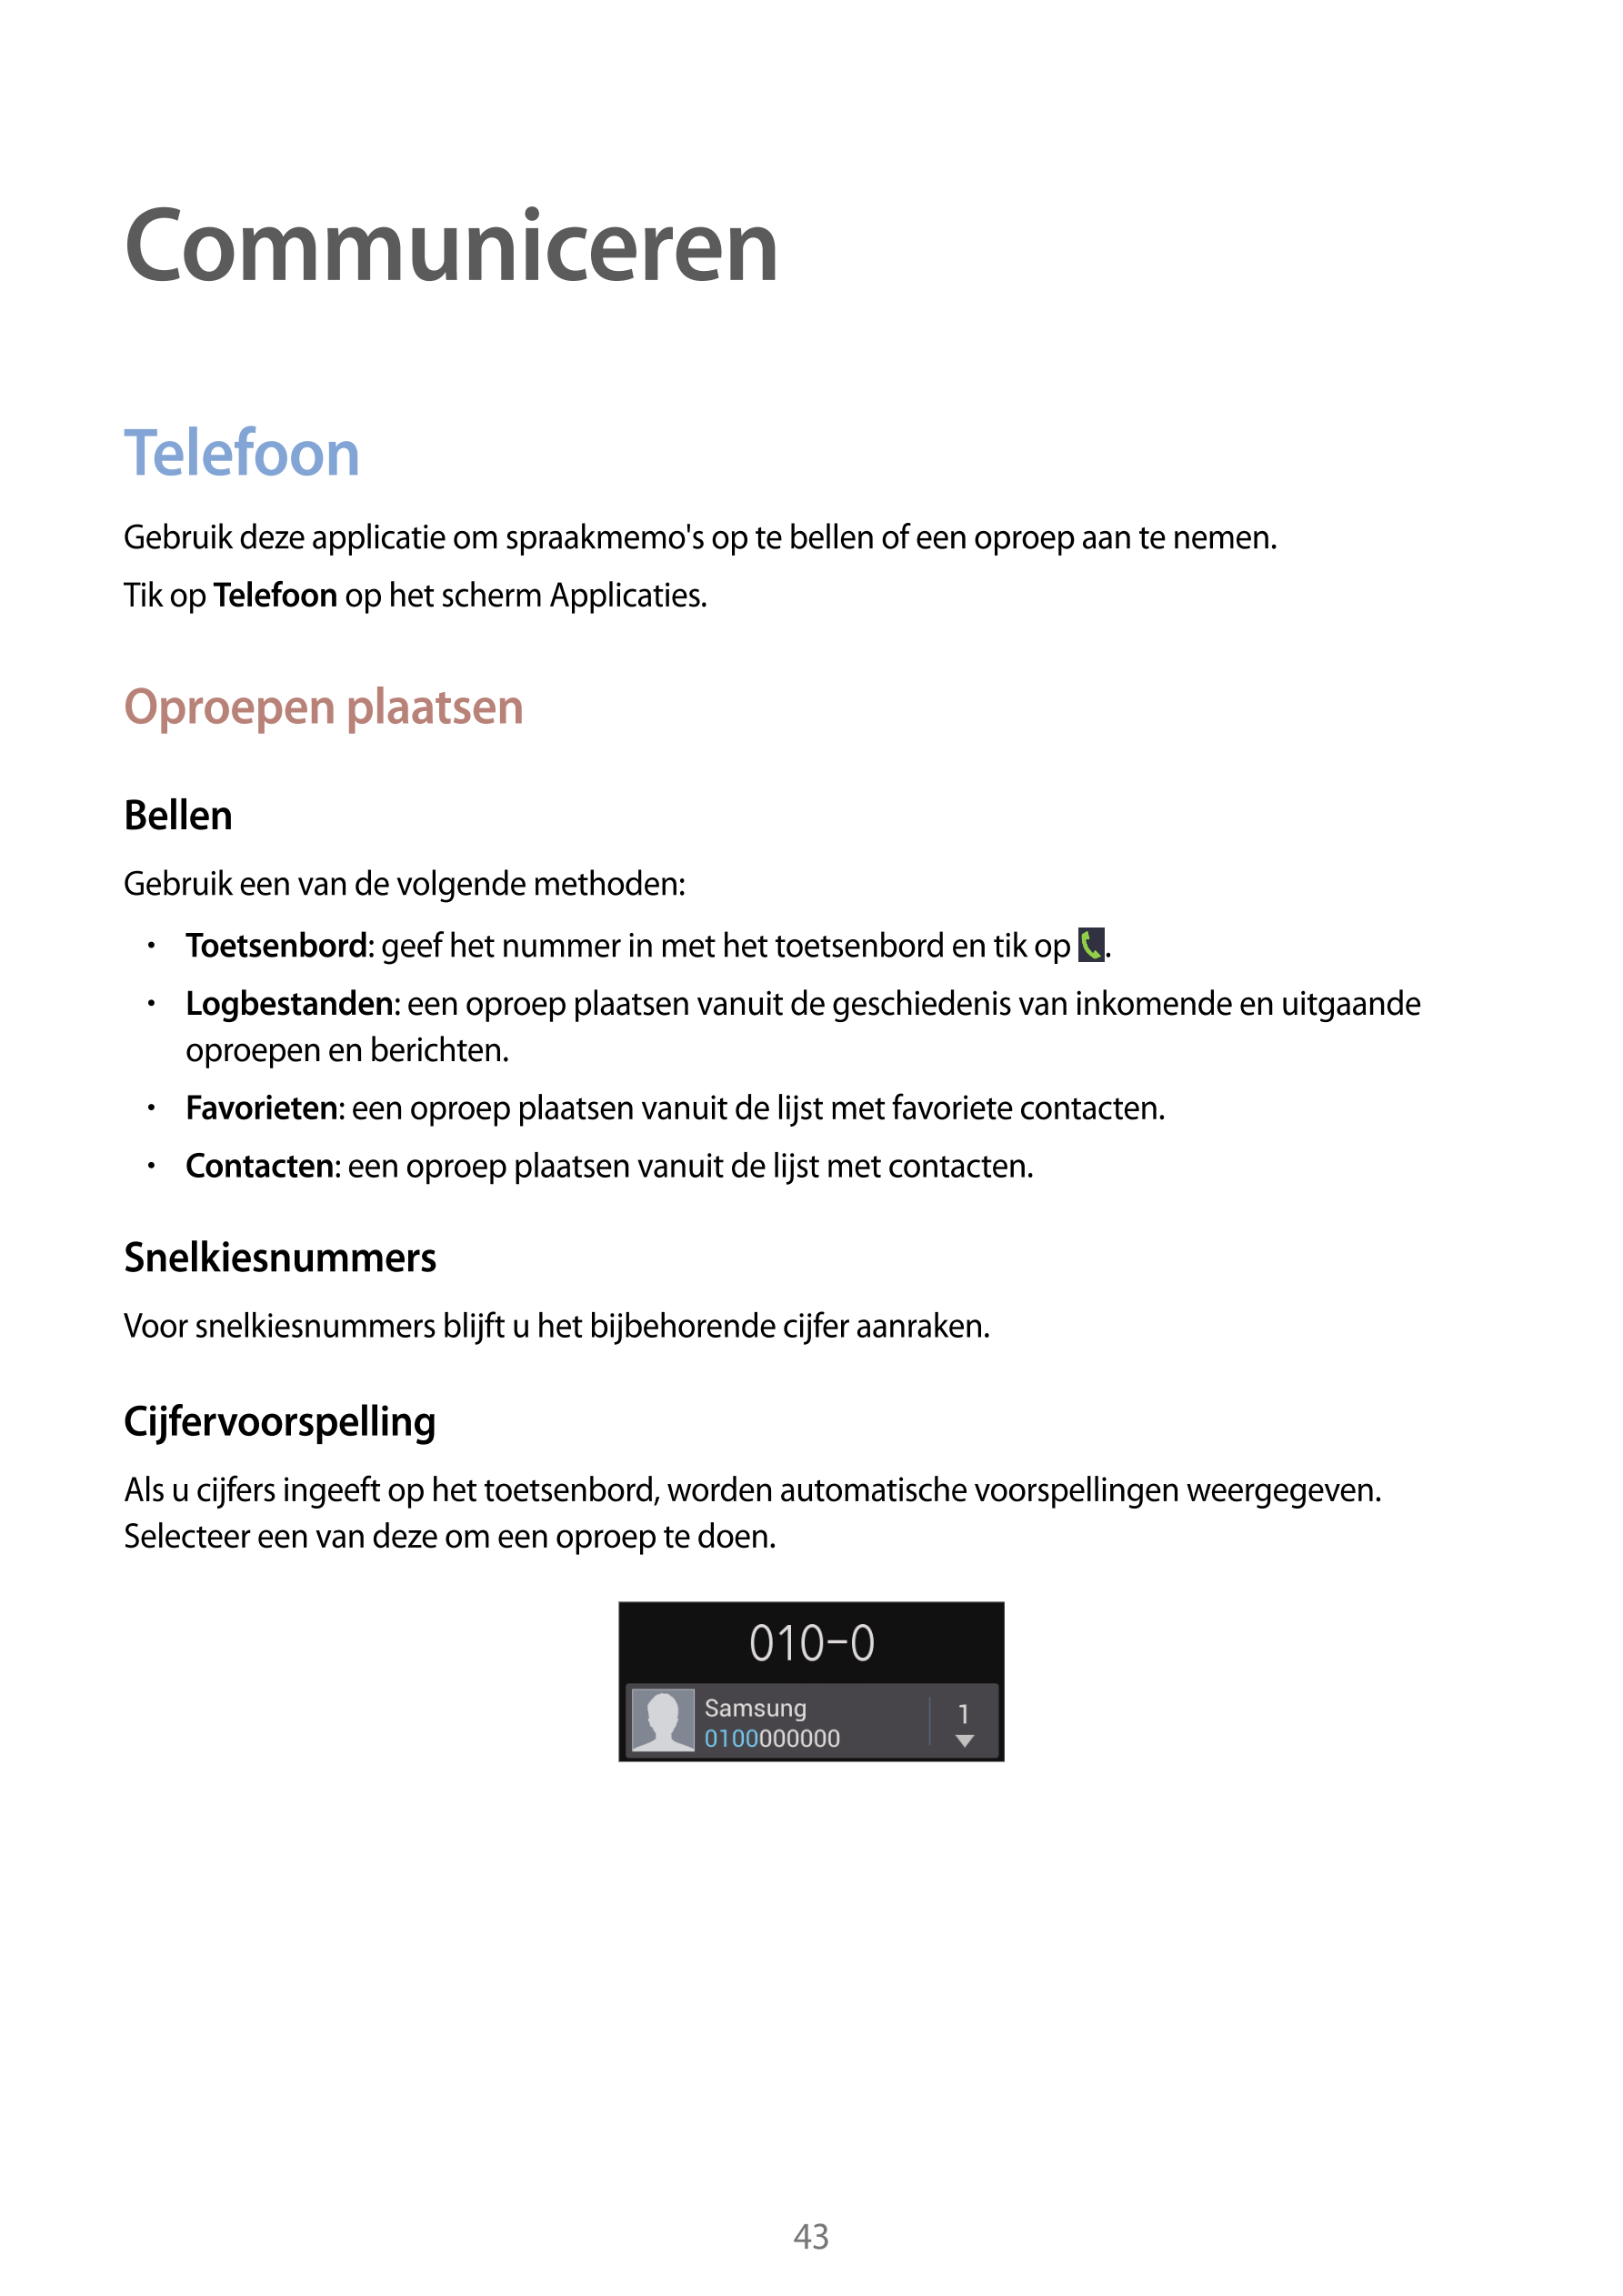 Communiceren
Telefoon
Gebruik deze applicatie om spraakmemo's op te bellen of een oproep aan te nemen.
Tik op  Telefoon op het s